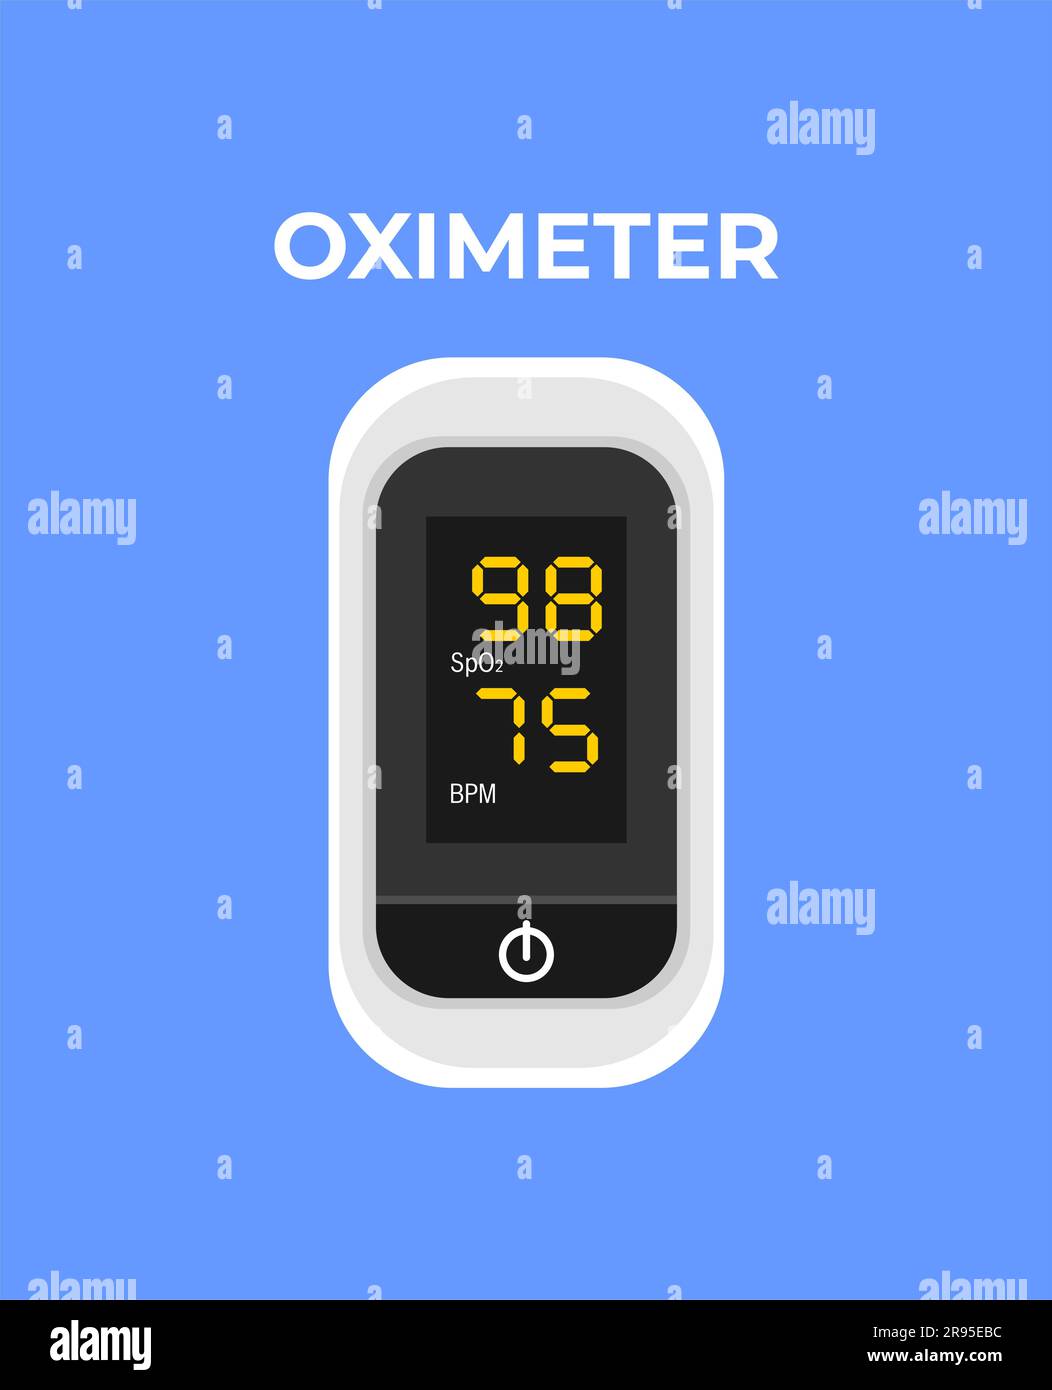 Weißes Pulsoxymeter auf blauem Hintergrund. Medizinisches Gerät zur Messung der Sauerstoffsättigung und Pulsfrequenz im Blut. Abbildung eines flachen Vektors Stock Vektor